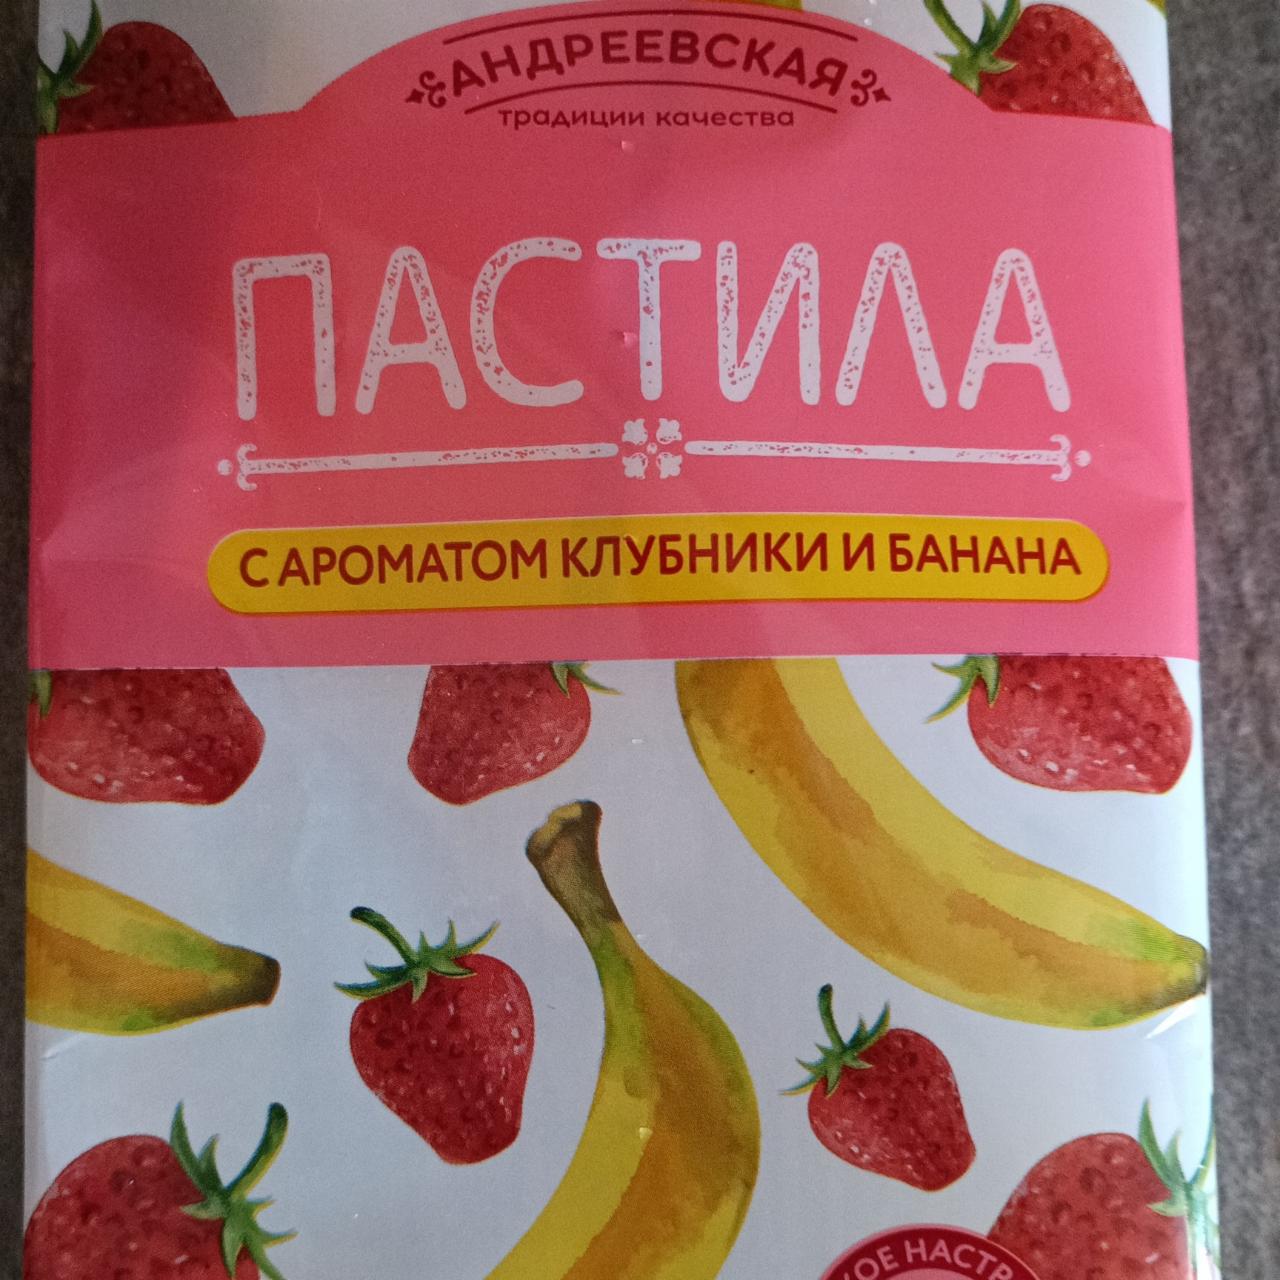 Фото - Пастила с ароматом клубники и банана Андреевская